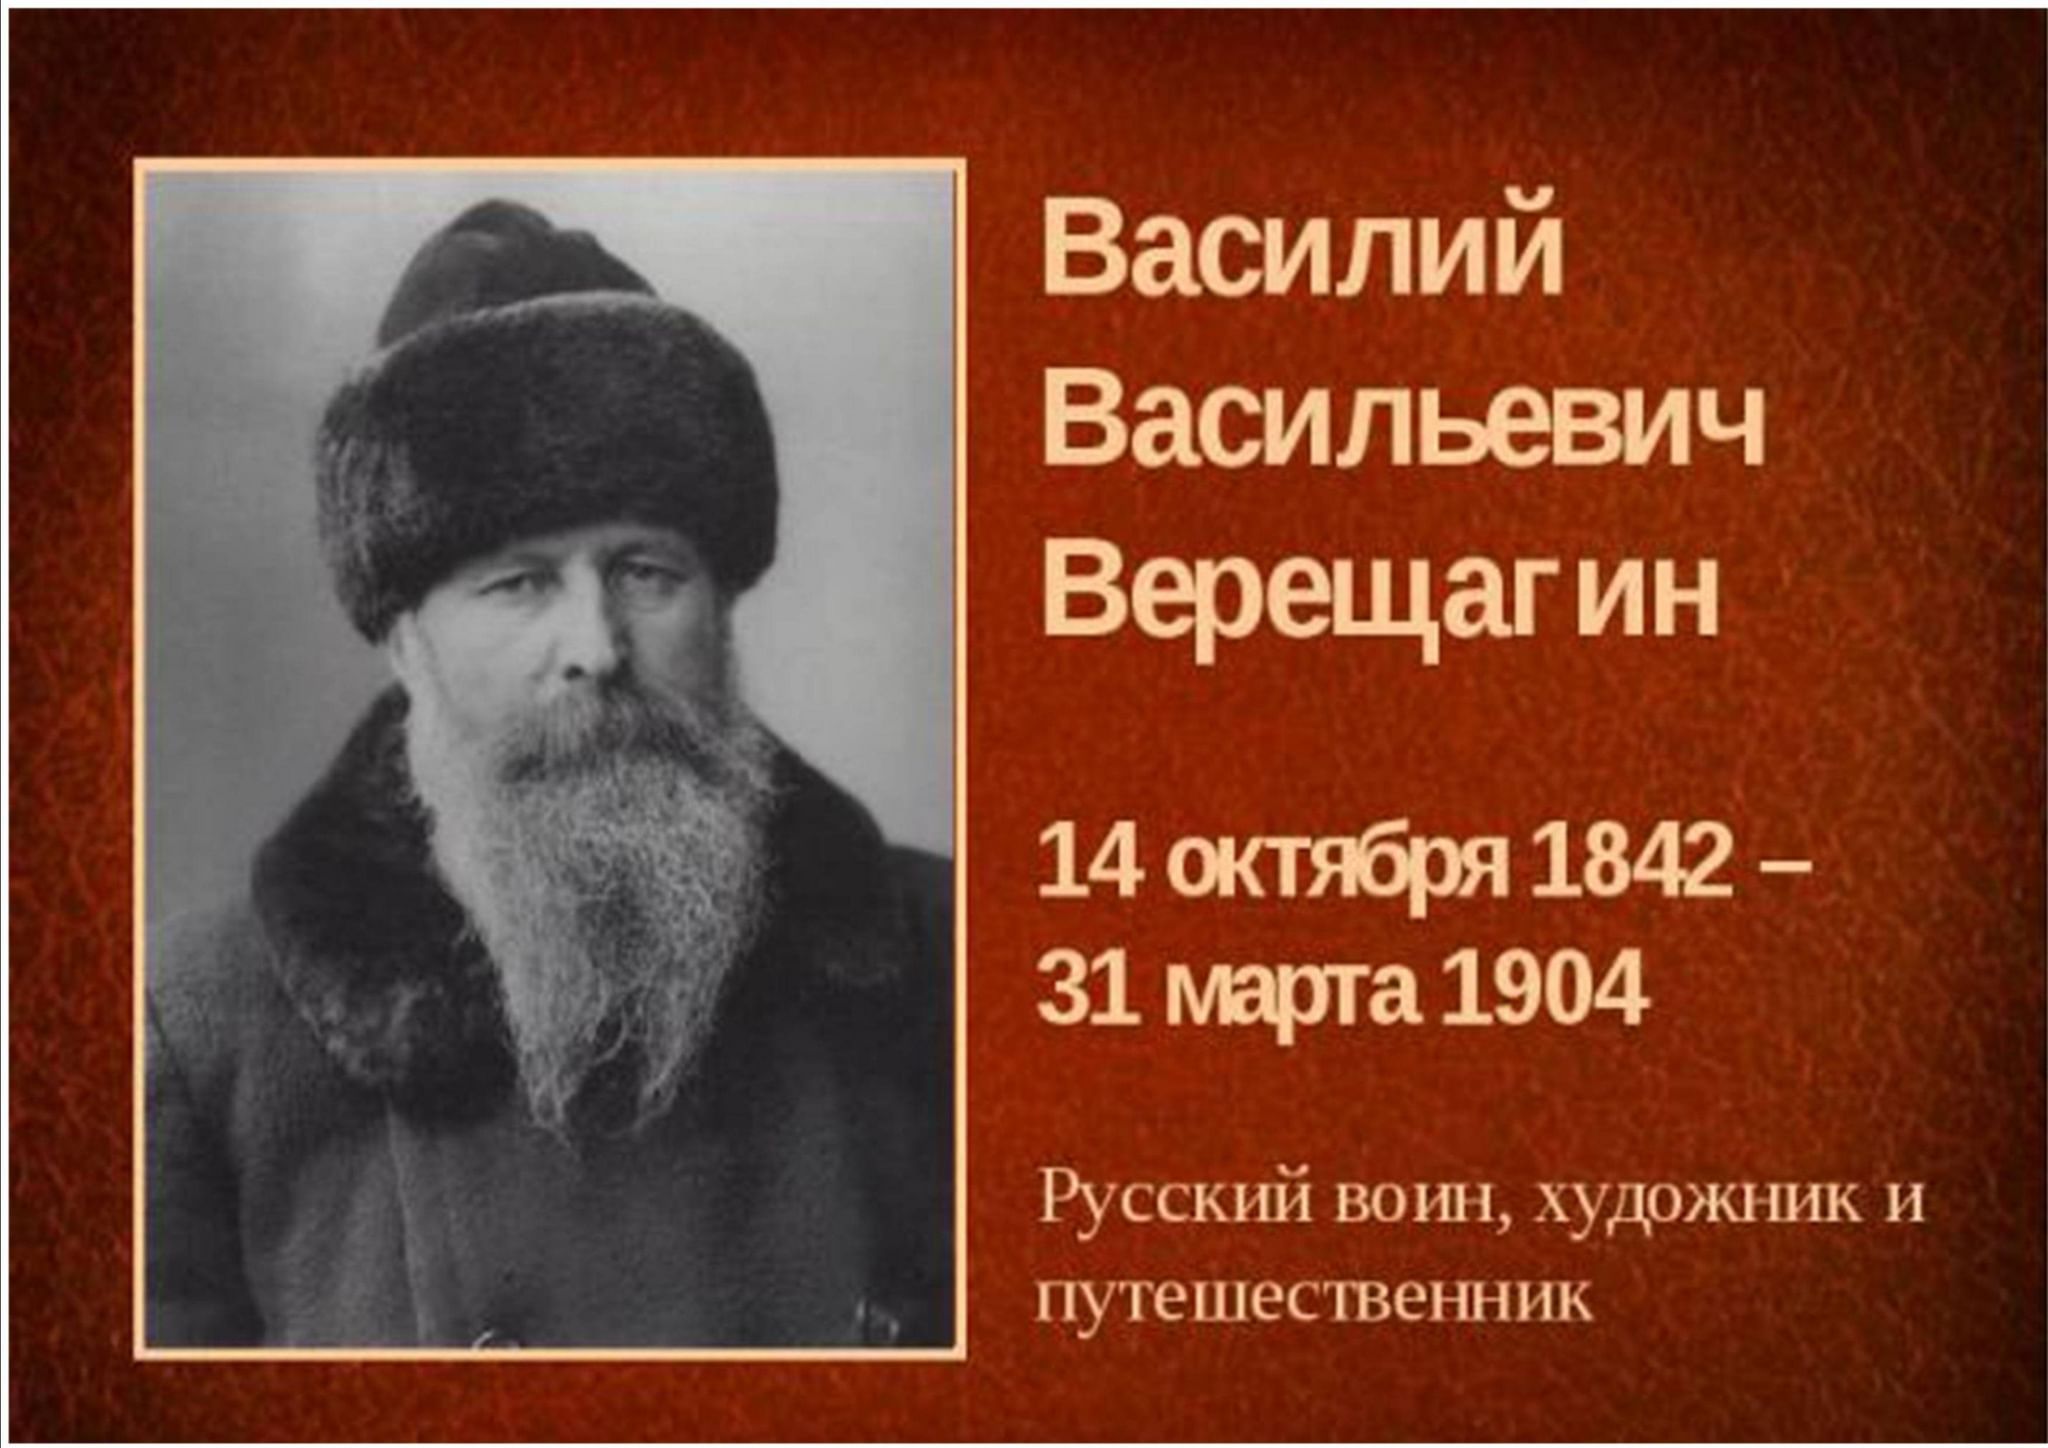 Василий Васильевич Верещагин родился в 1842